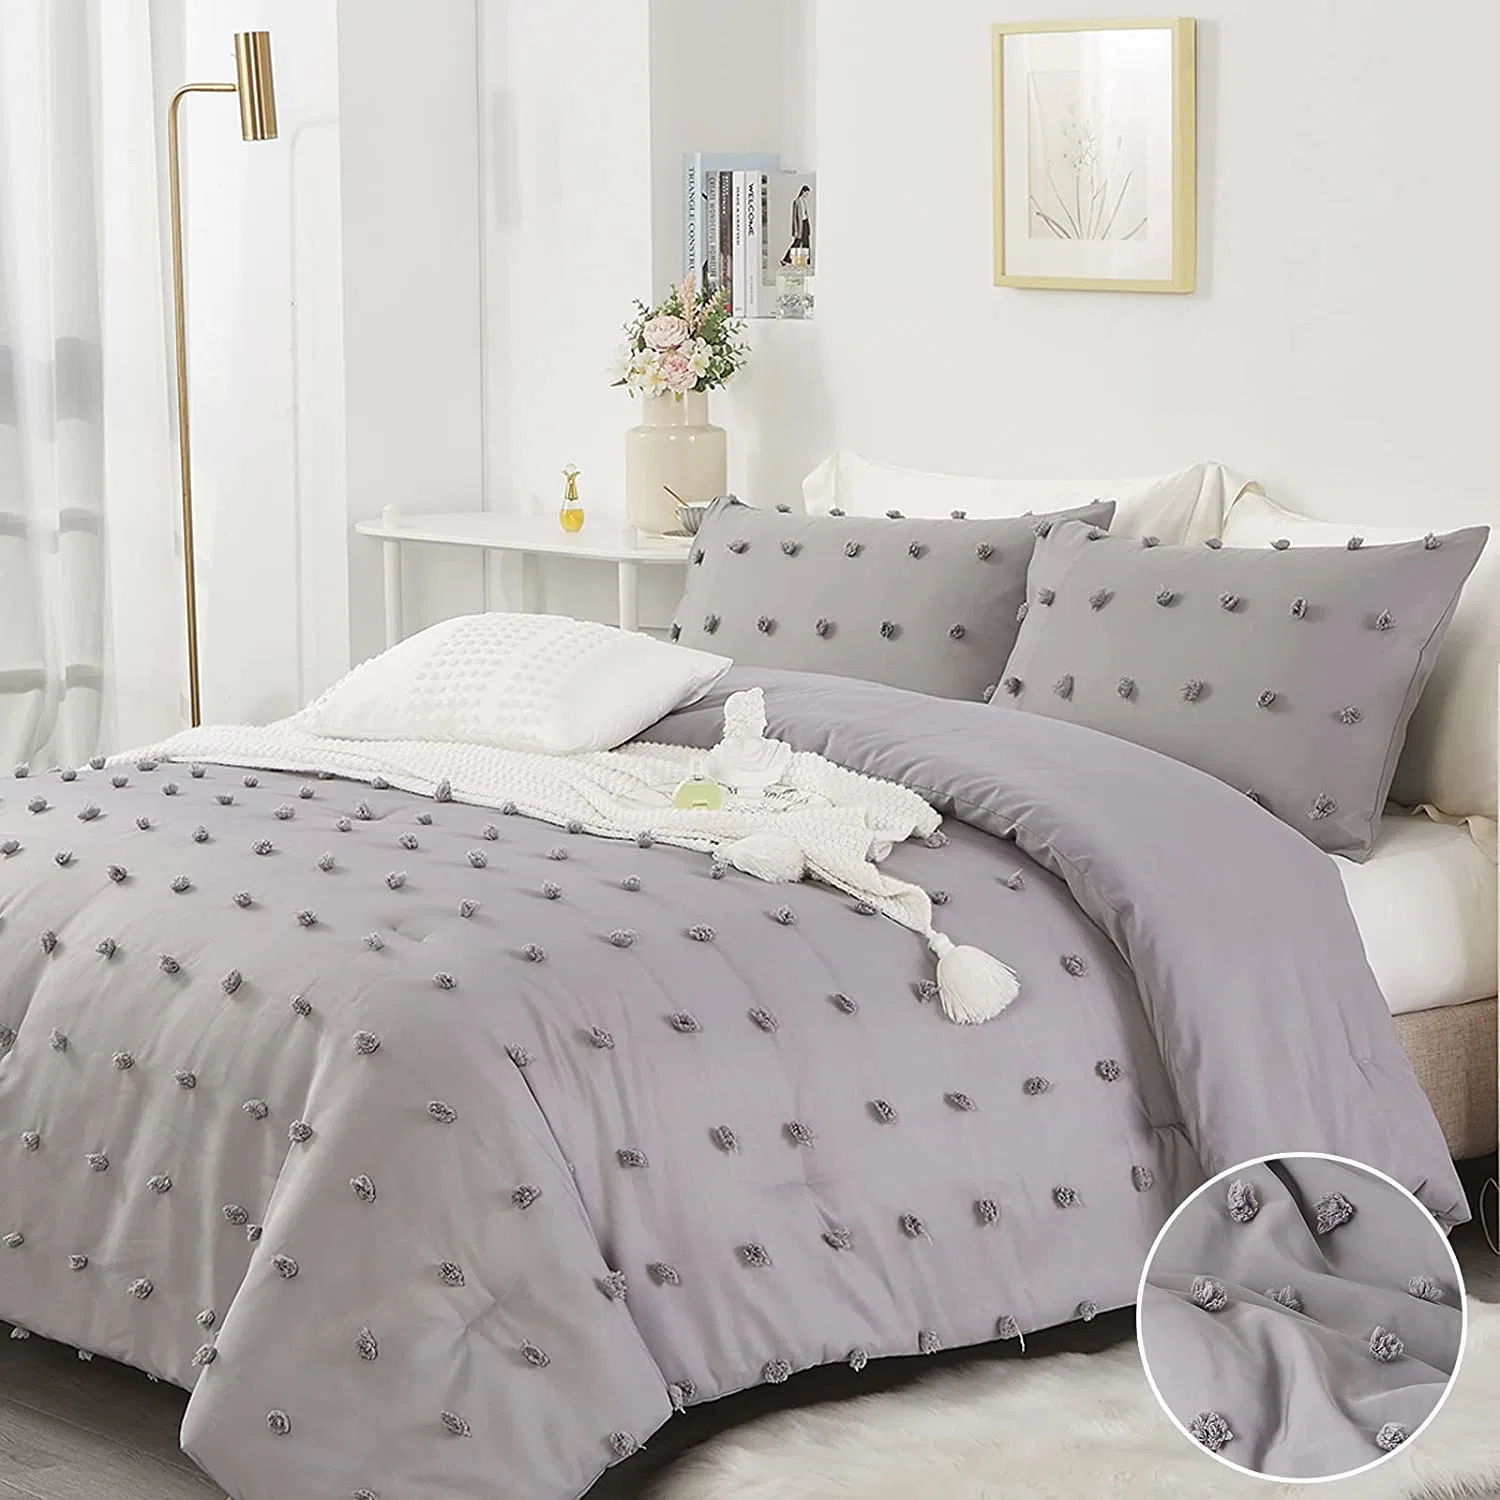 Hotel Casa la cama de algodón cálido Edredón bordado diseño jacquard manta consolador